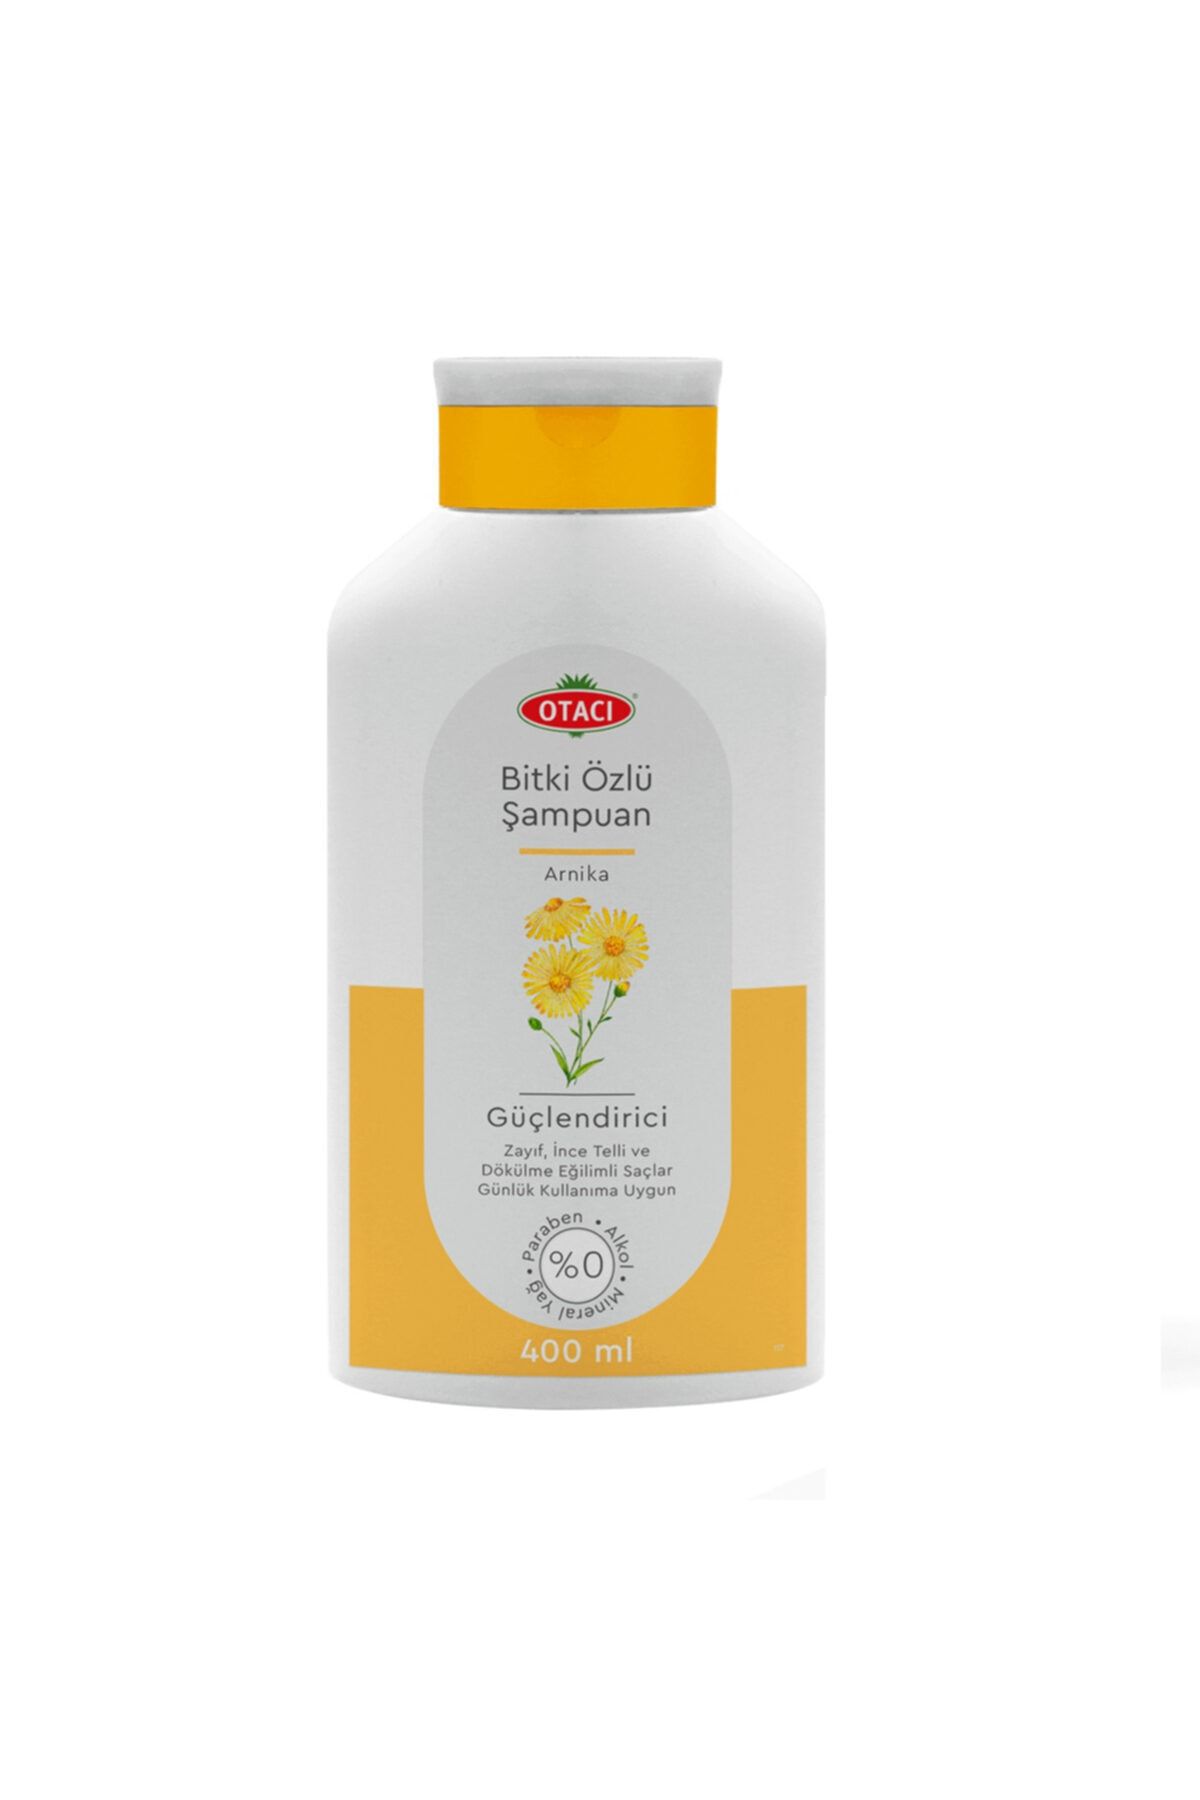 Otacı Bitki Özlü Şampuan Arnika 400 ml